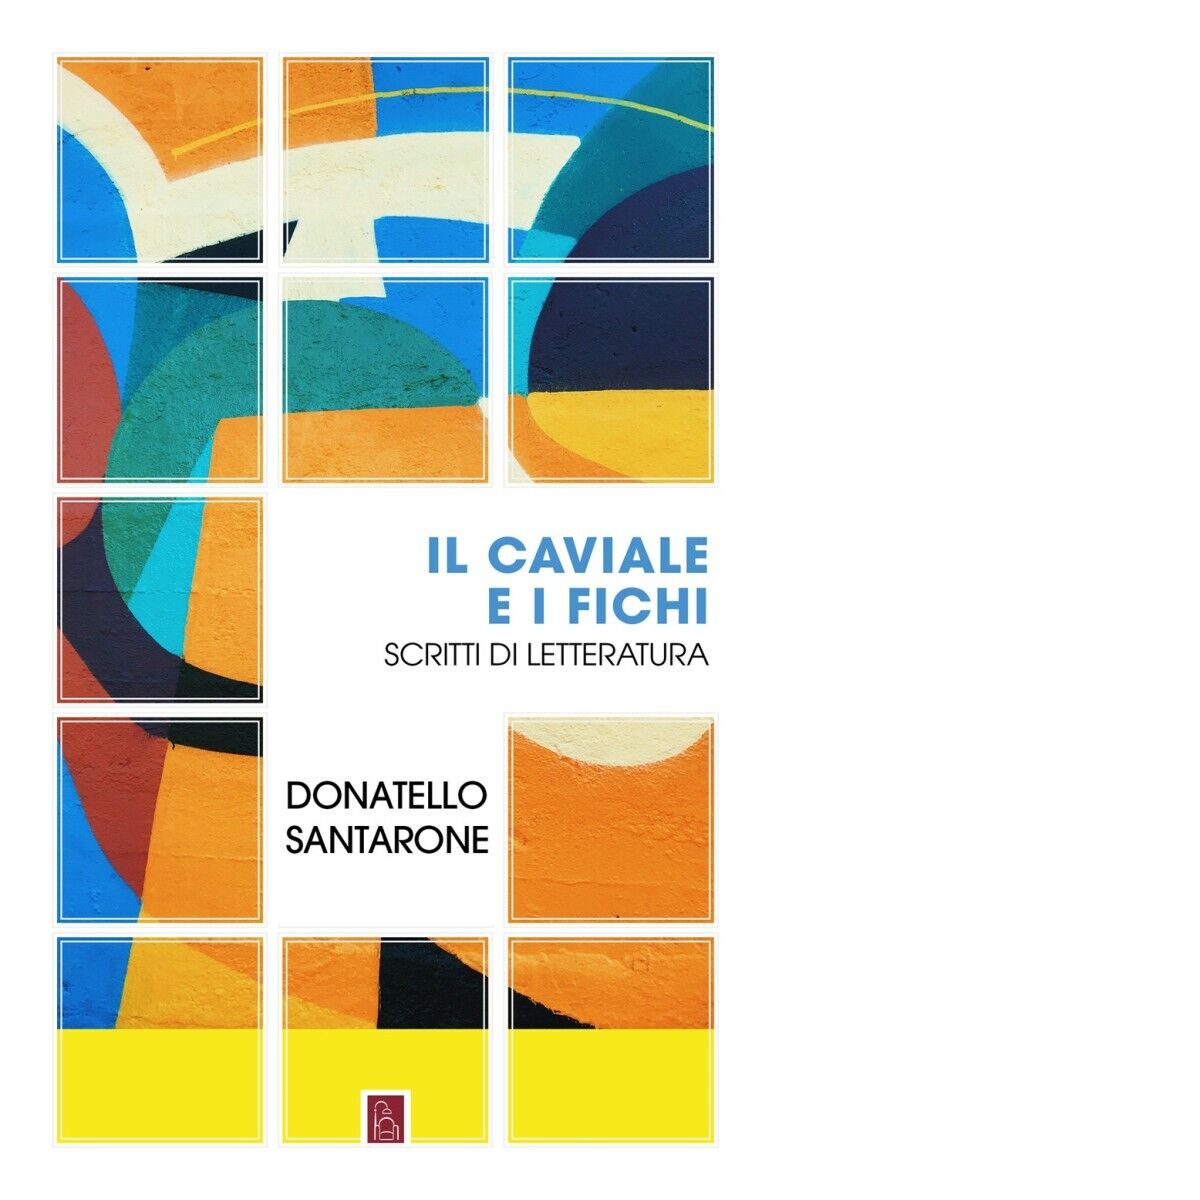  Il caviale e i fichi. Scritti di letteratura di Donatello Santarone, 2023, B